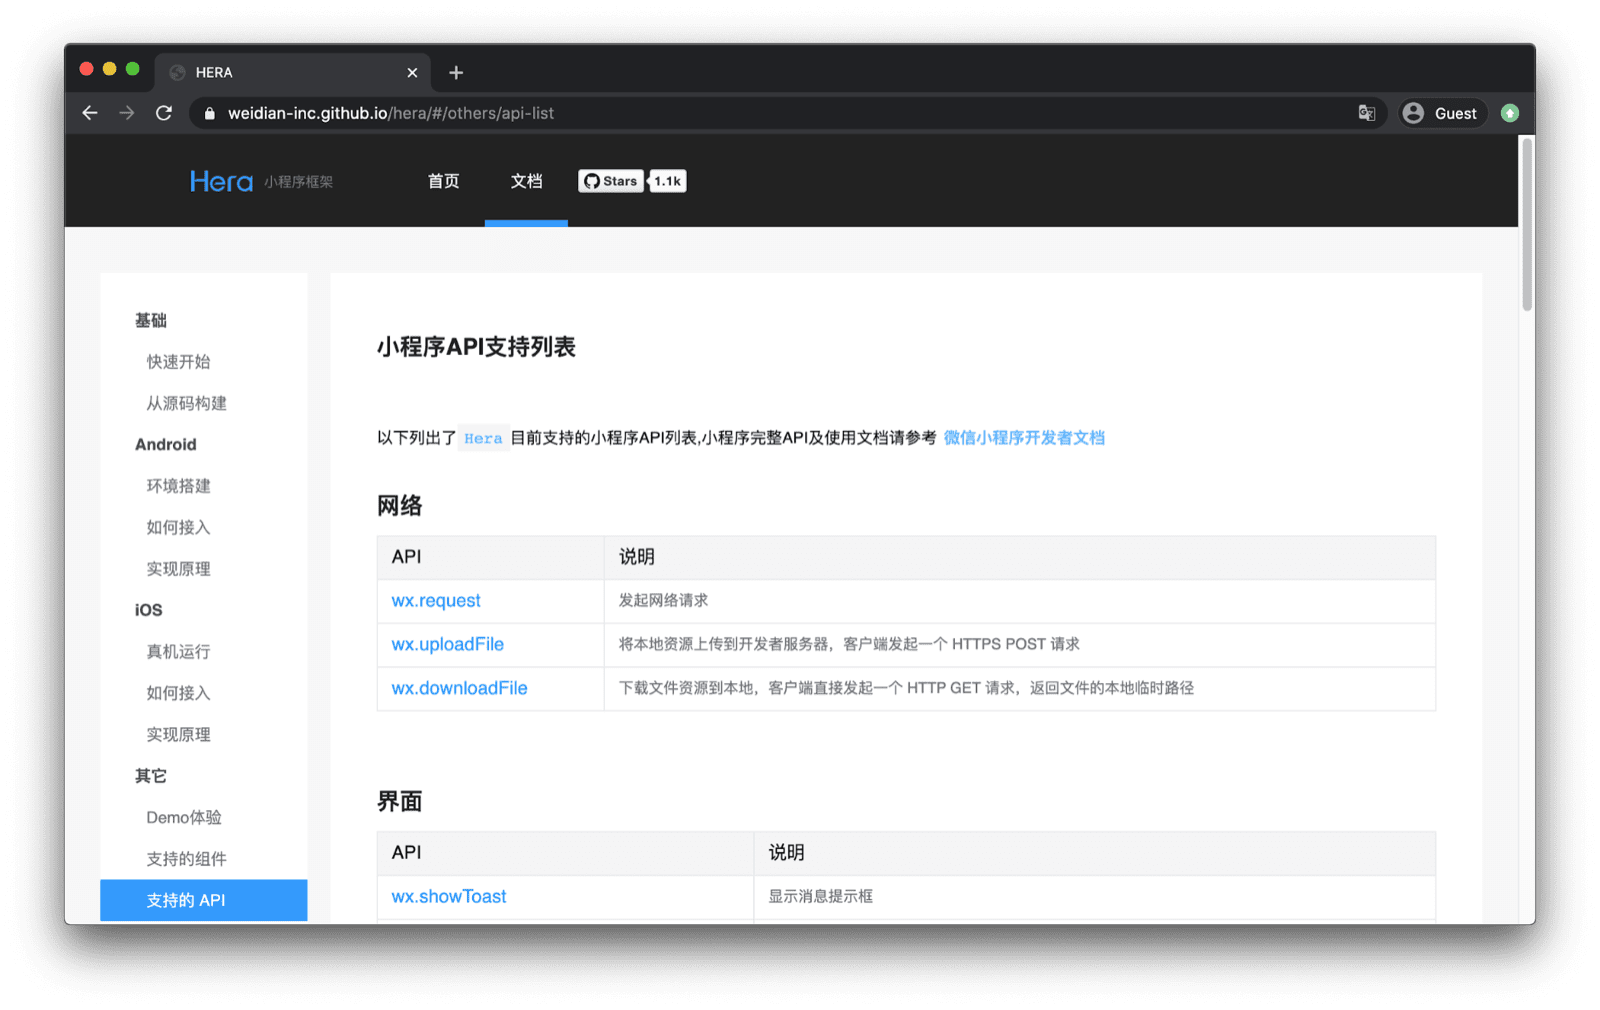 Dokumentation des Hera-Mini-App-Frameworks, in dem die unterstützten WeChat-APIs wie „wx.request“, „wx.uploadFile“ usw. aufgeführt sind.